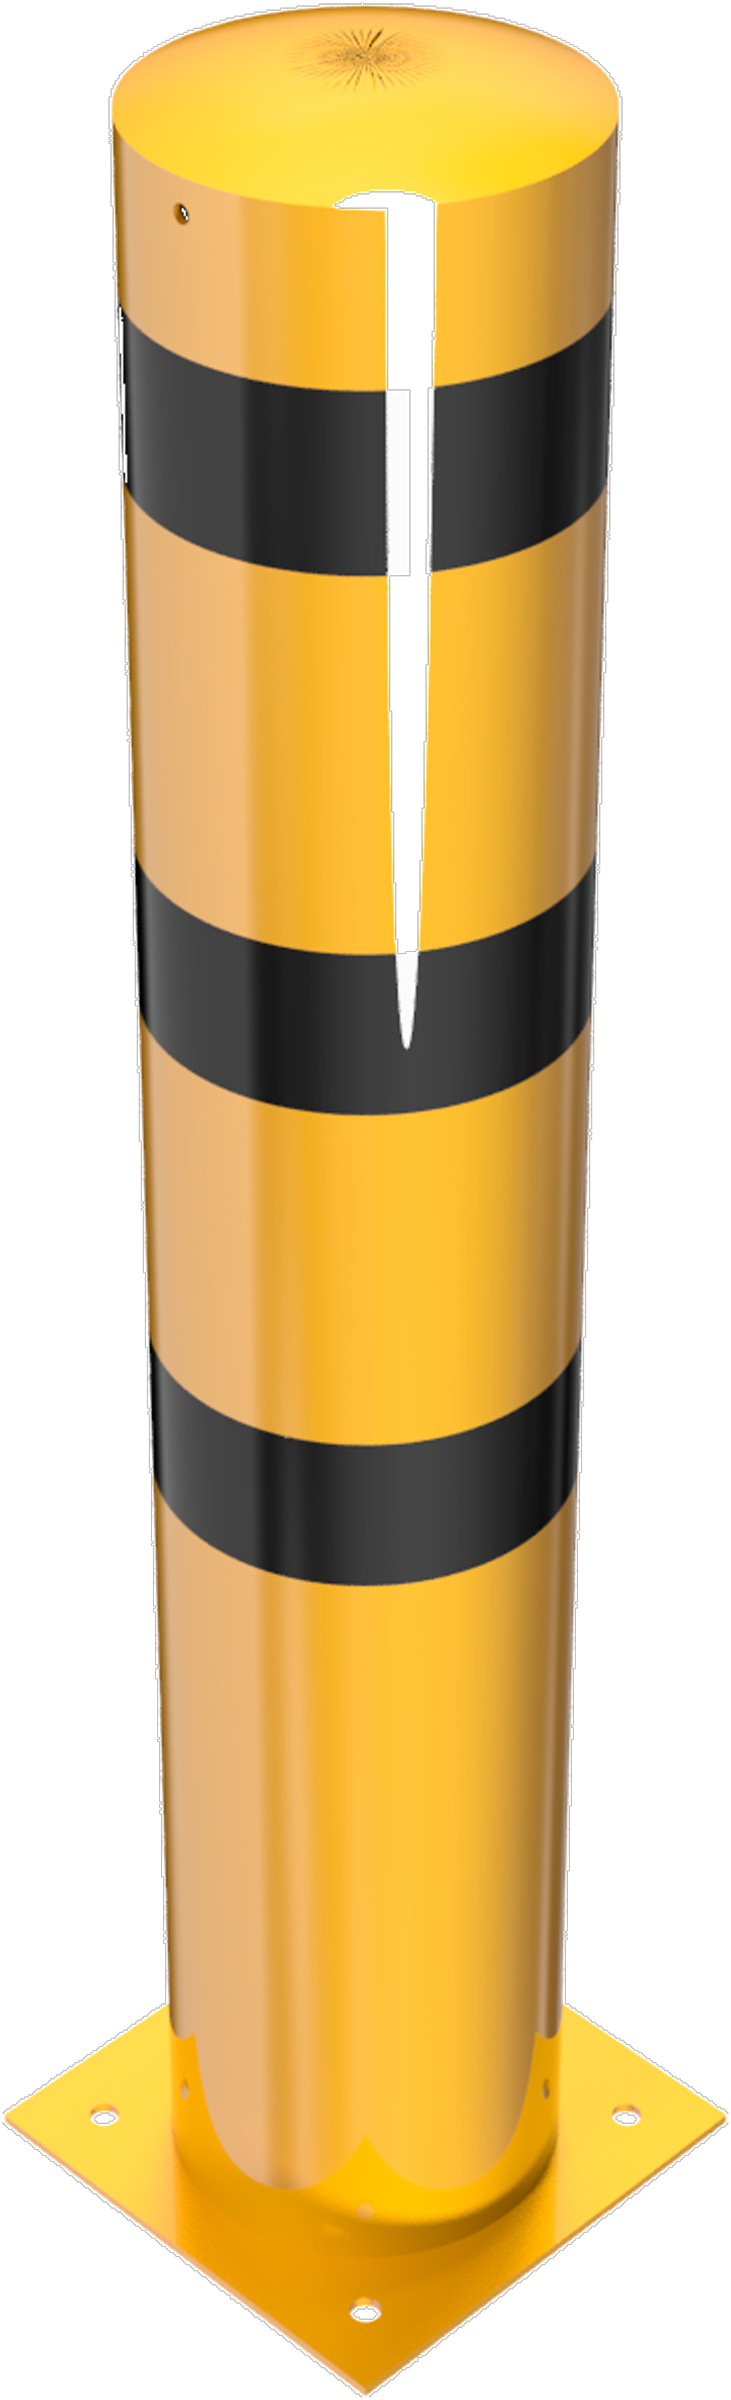 Schake Stahlrohrpoller OD Ø 273 mm gelb | schwarz - 1,50 m